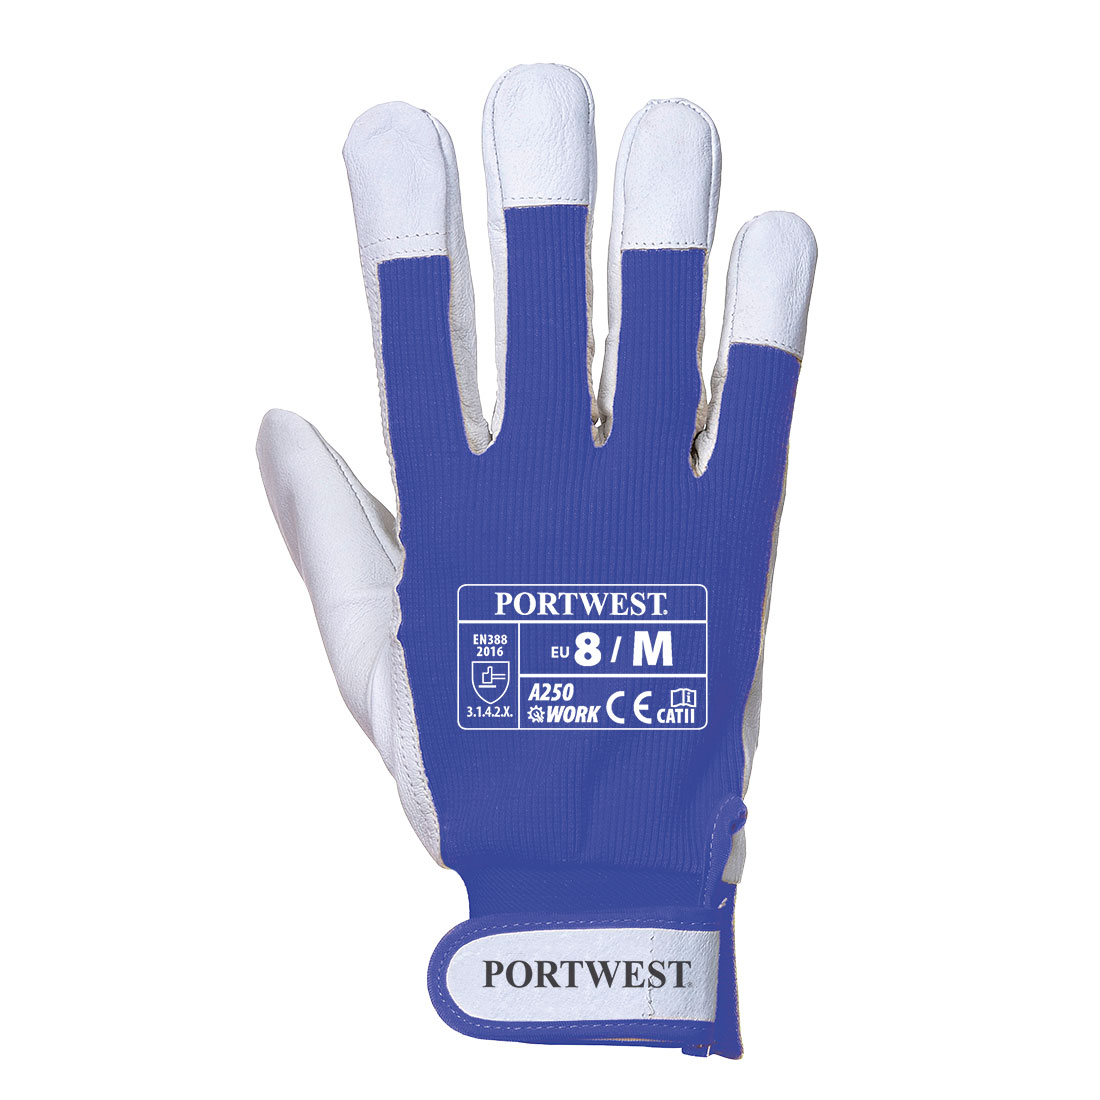 Portwest A250 Tergsus Glove - Blue (M)